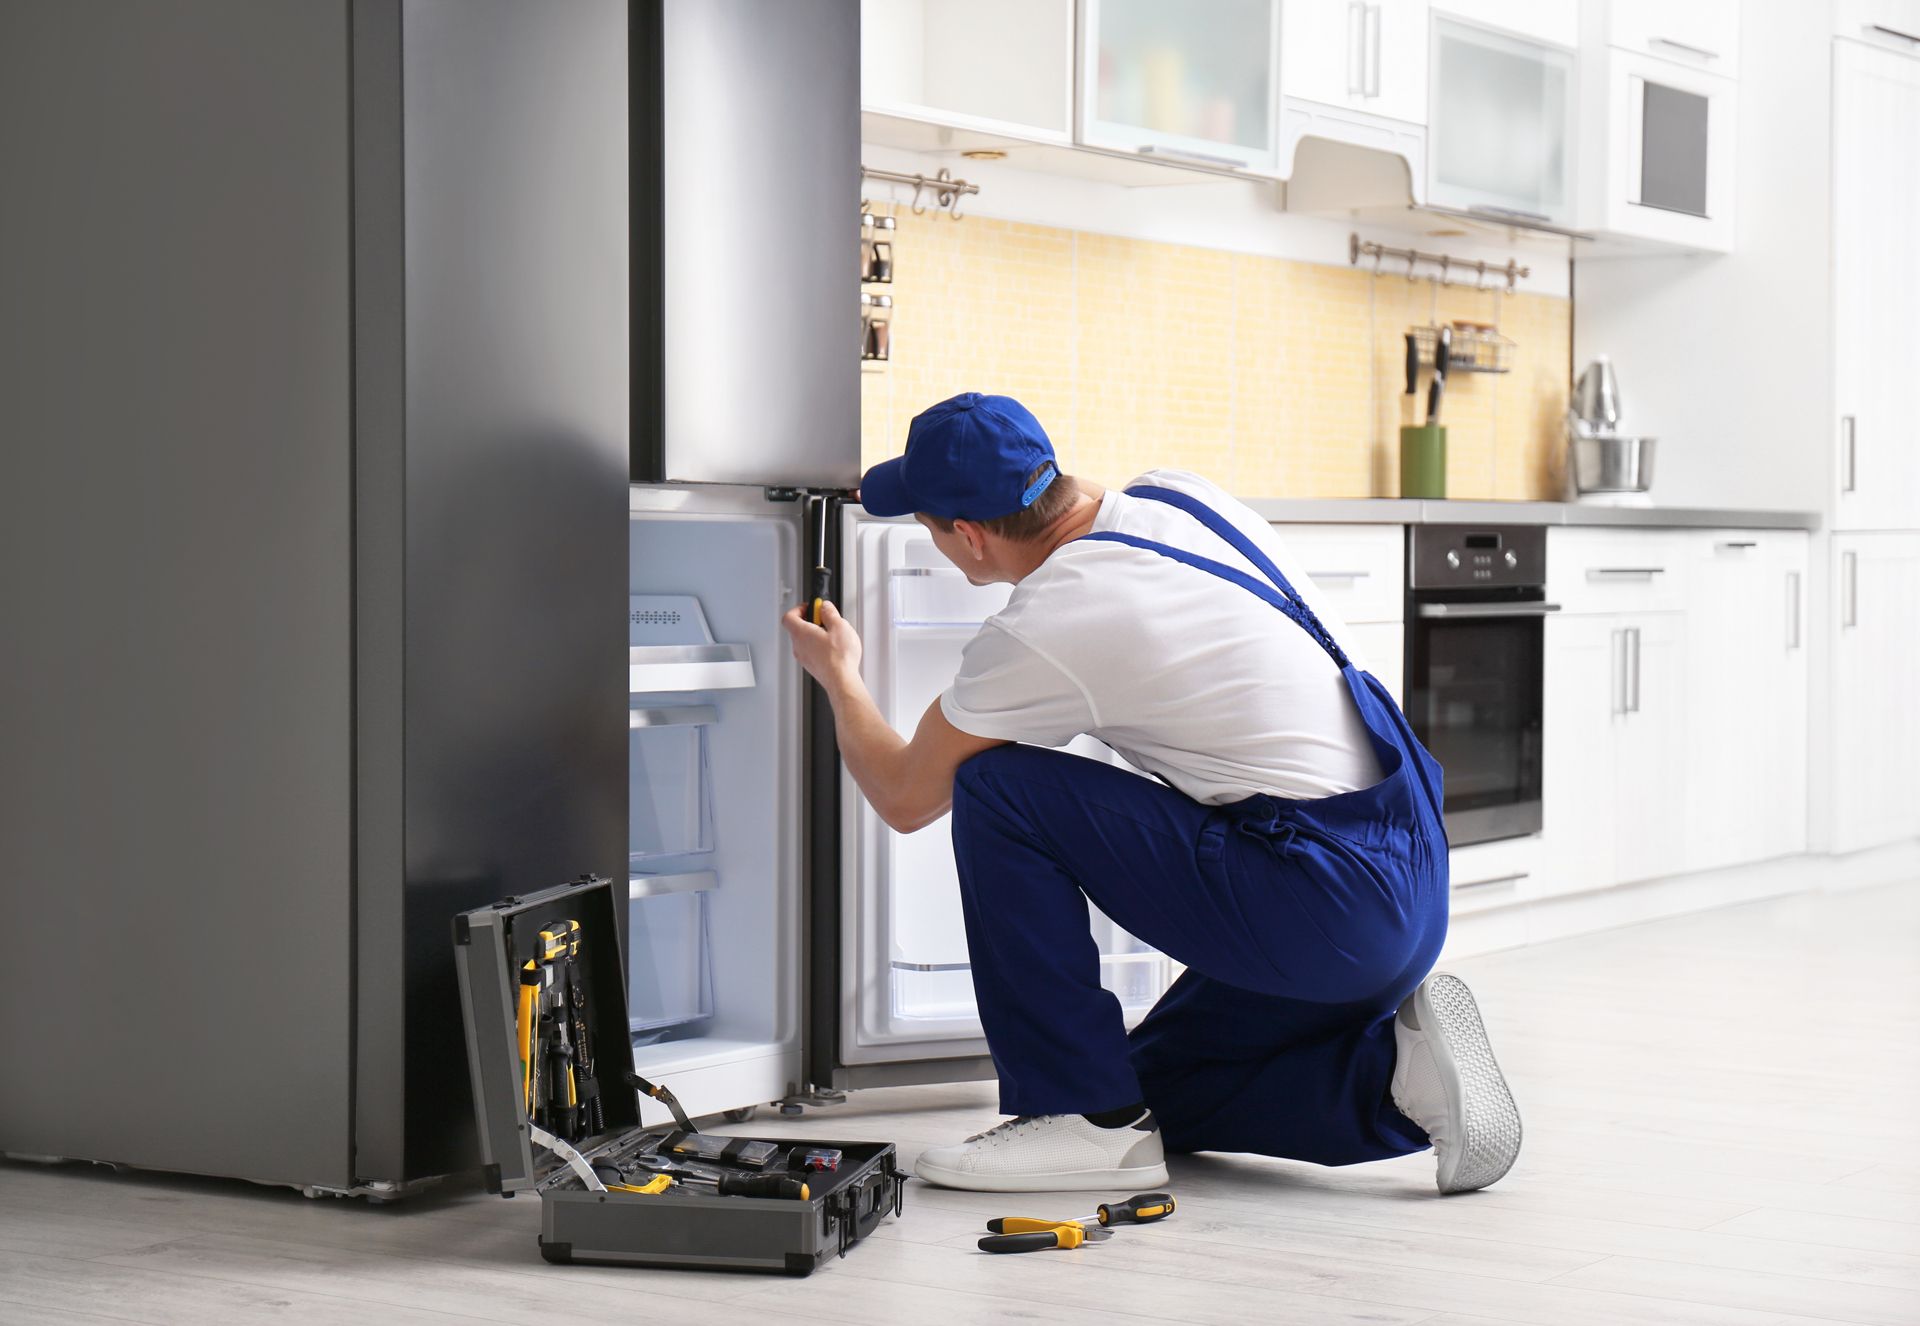 Repairing Refrigerator in Kitchen